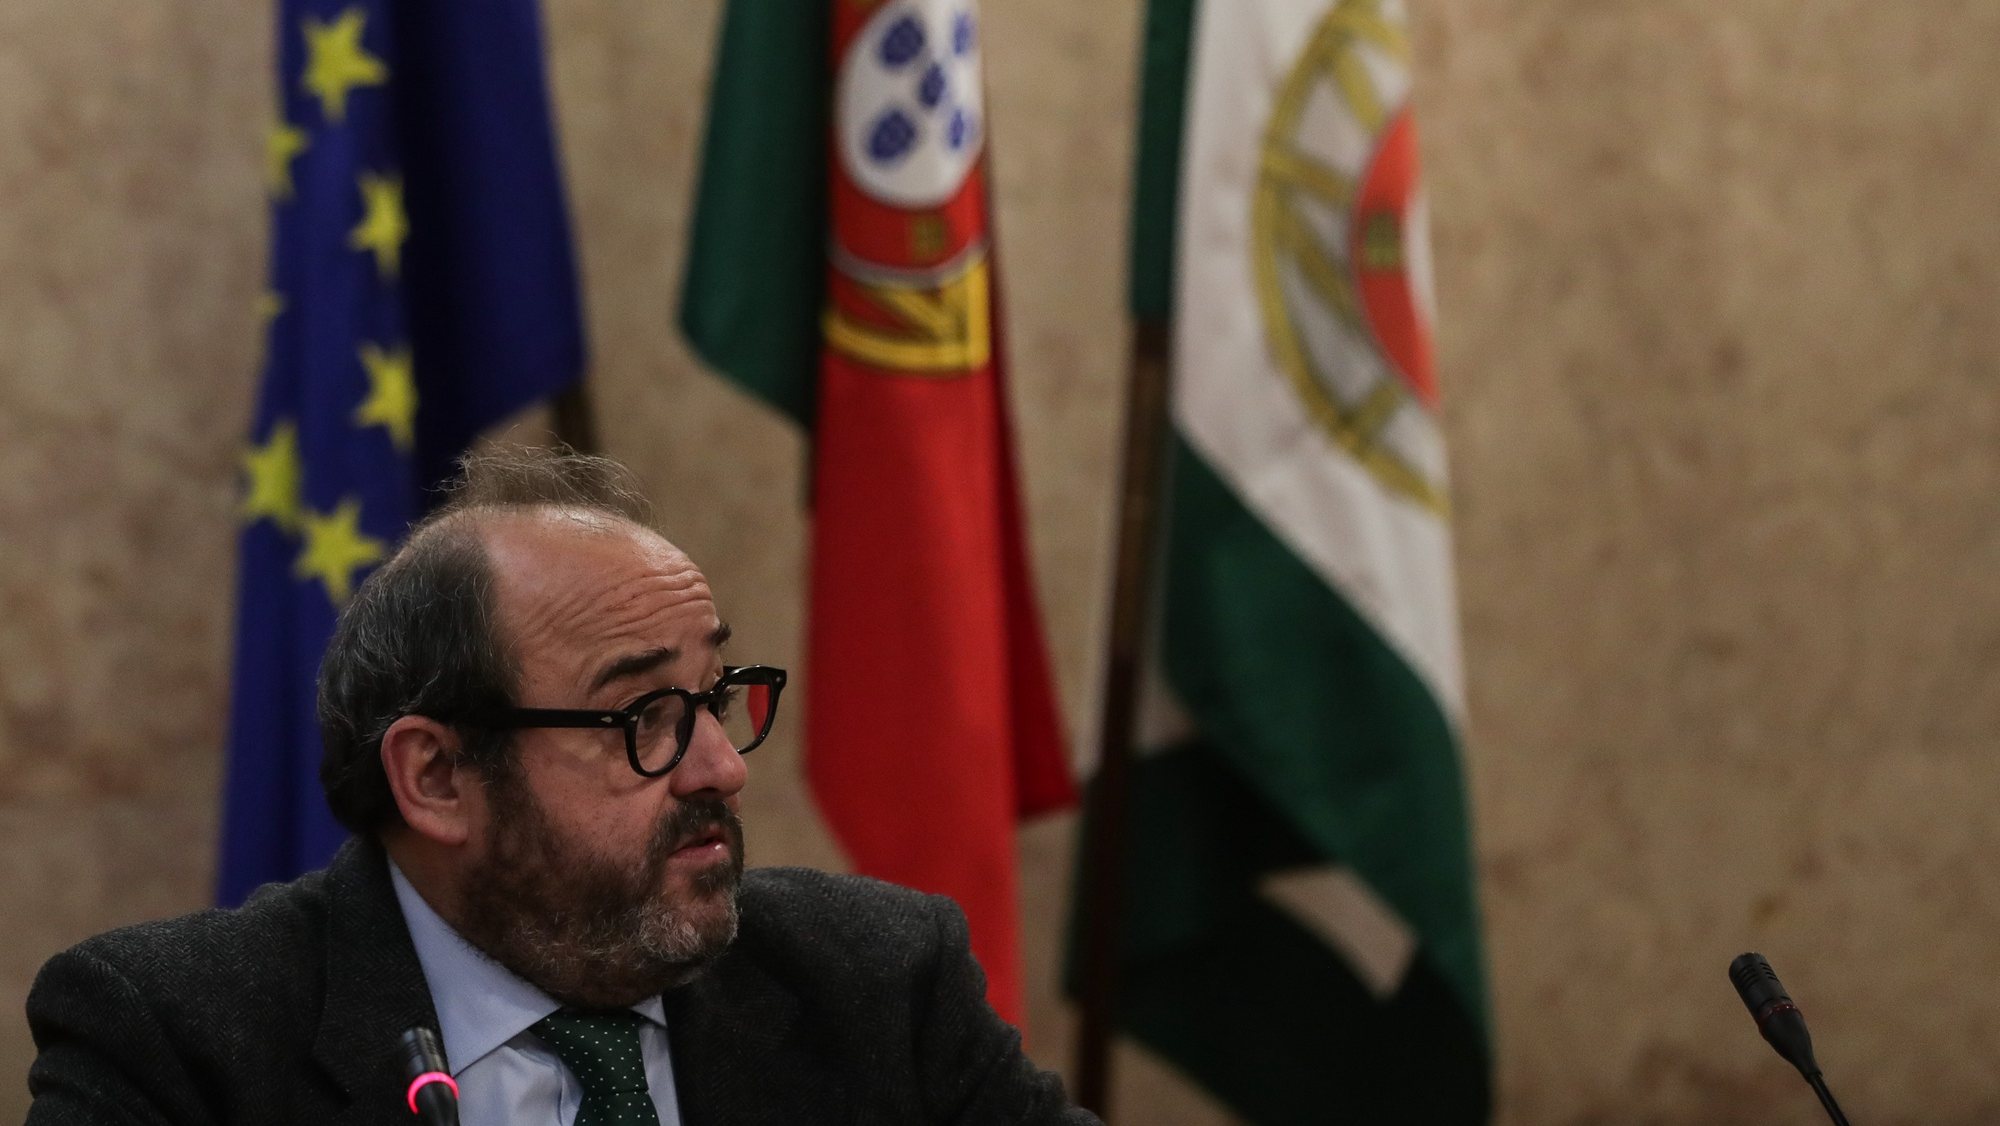 João Tiago Machado da Comissão Nacional de Eleições fala em conferência de imprensa sobre as eleições para a Assembleia da República em Lisboa, 16 de fevereiro de 2022. TIAGO PETINGA/LUSA